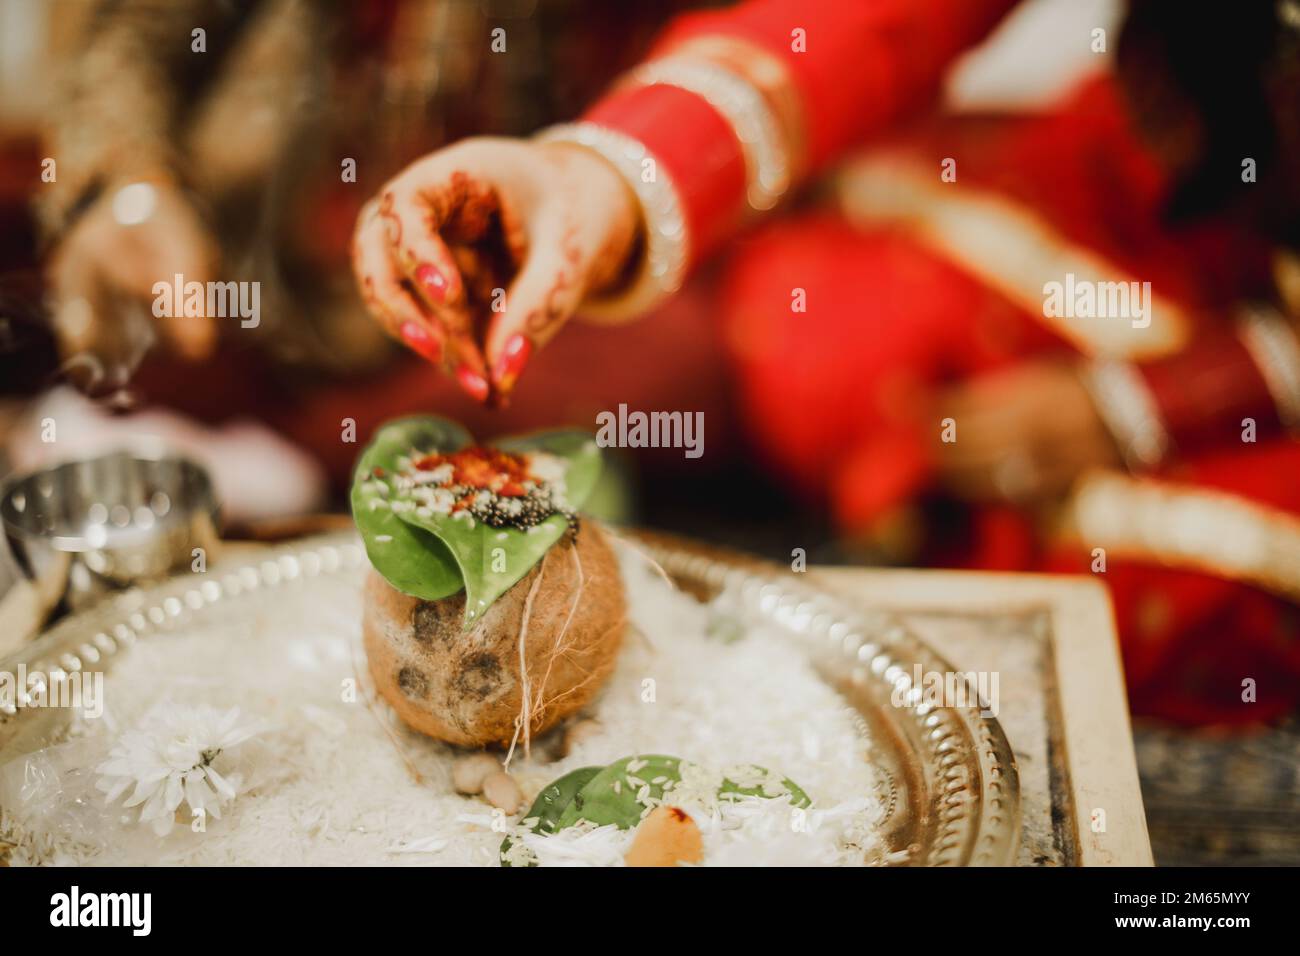 cerimonia di nozze indiana cerimonia di islam indù personalizzata per sposa e sposo Foto Stock